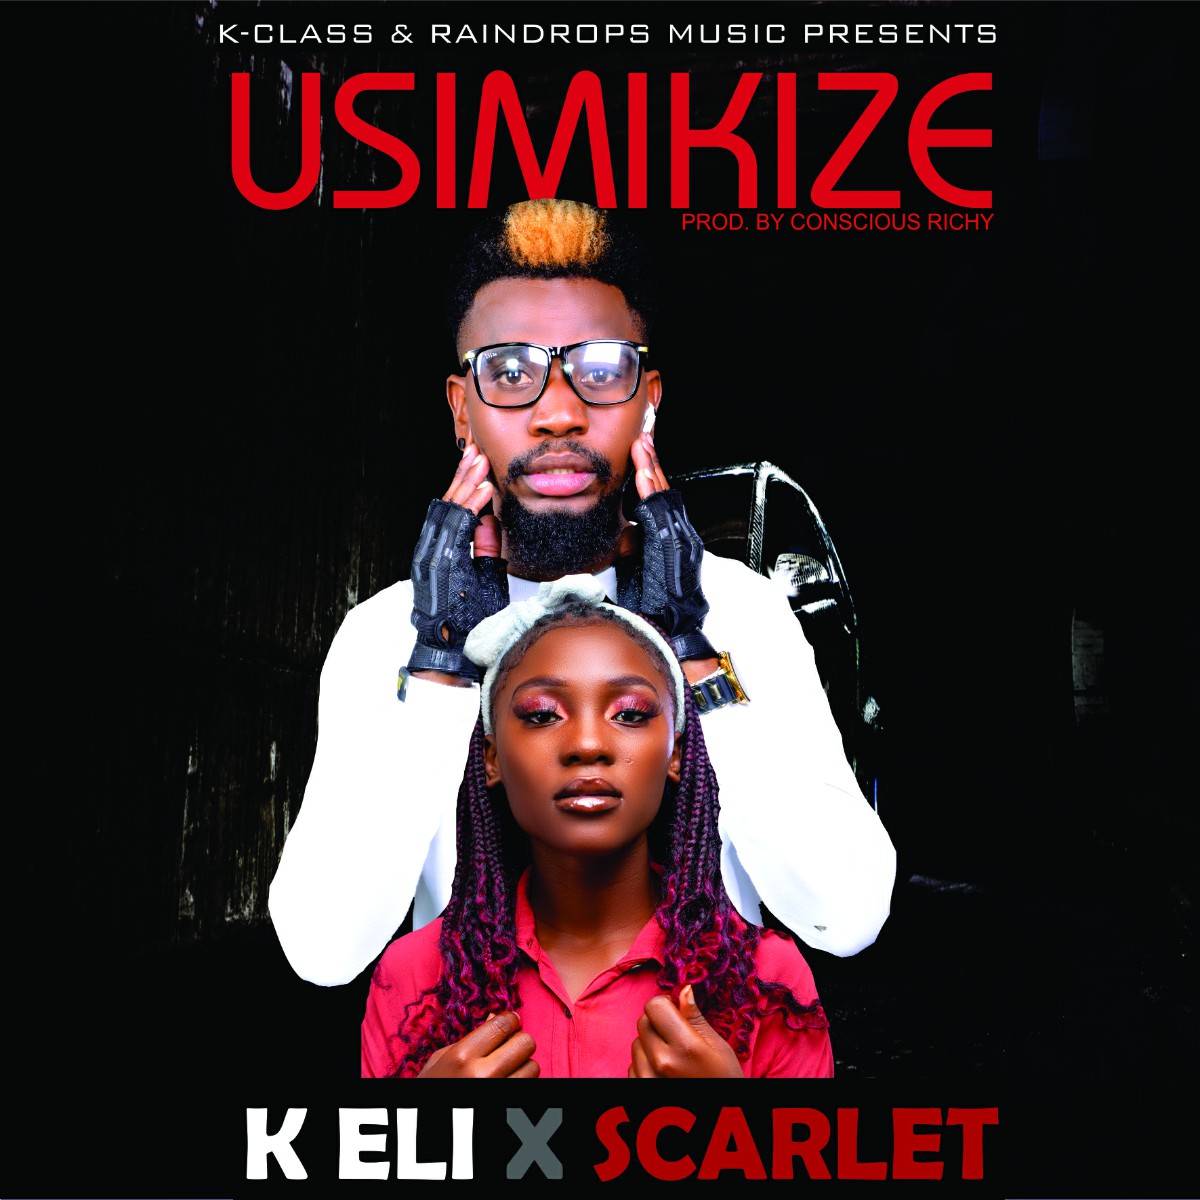 K Eli ft. Scarlet - Usimikize